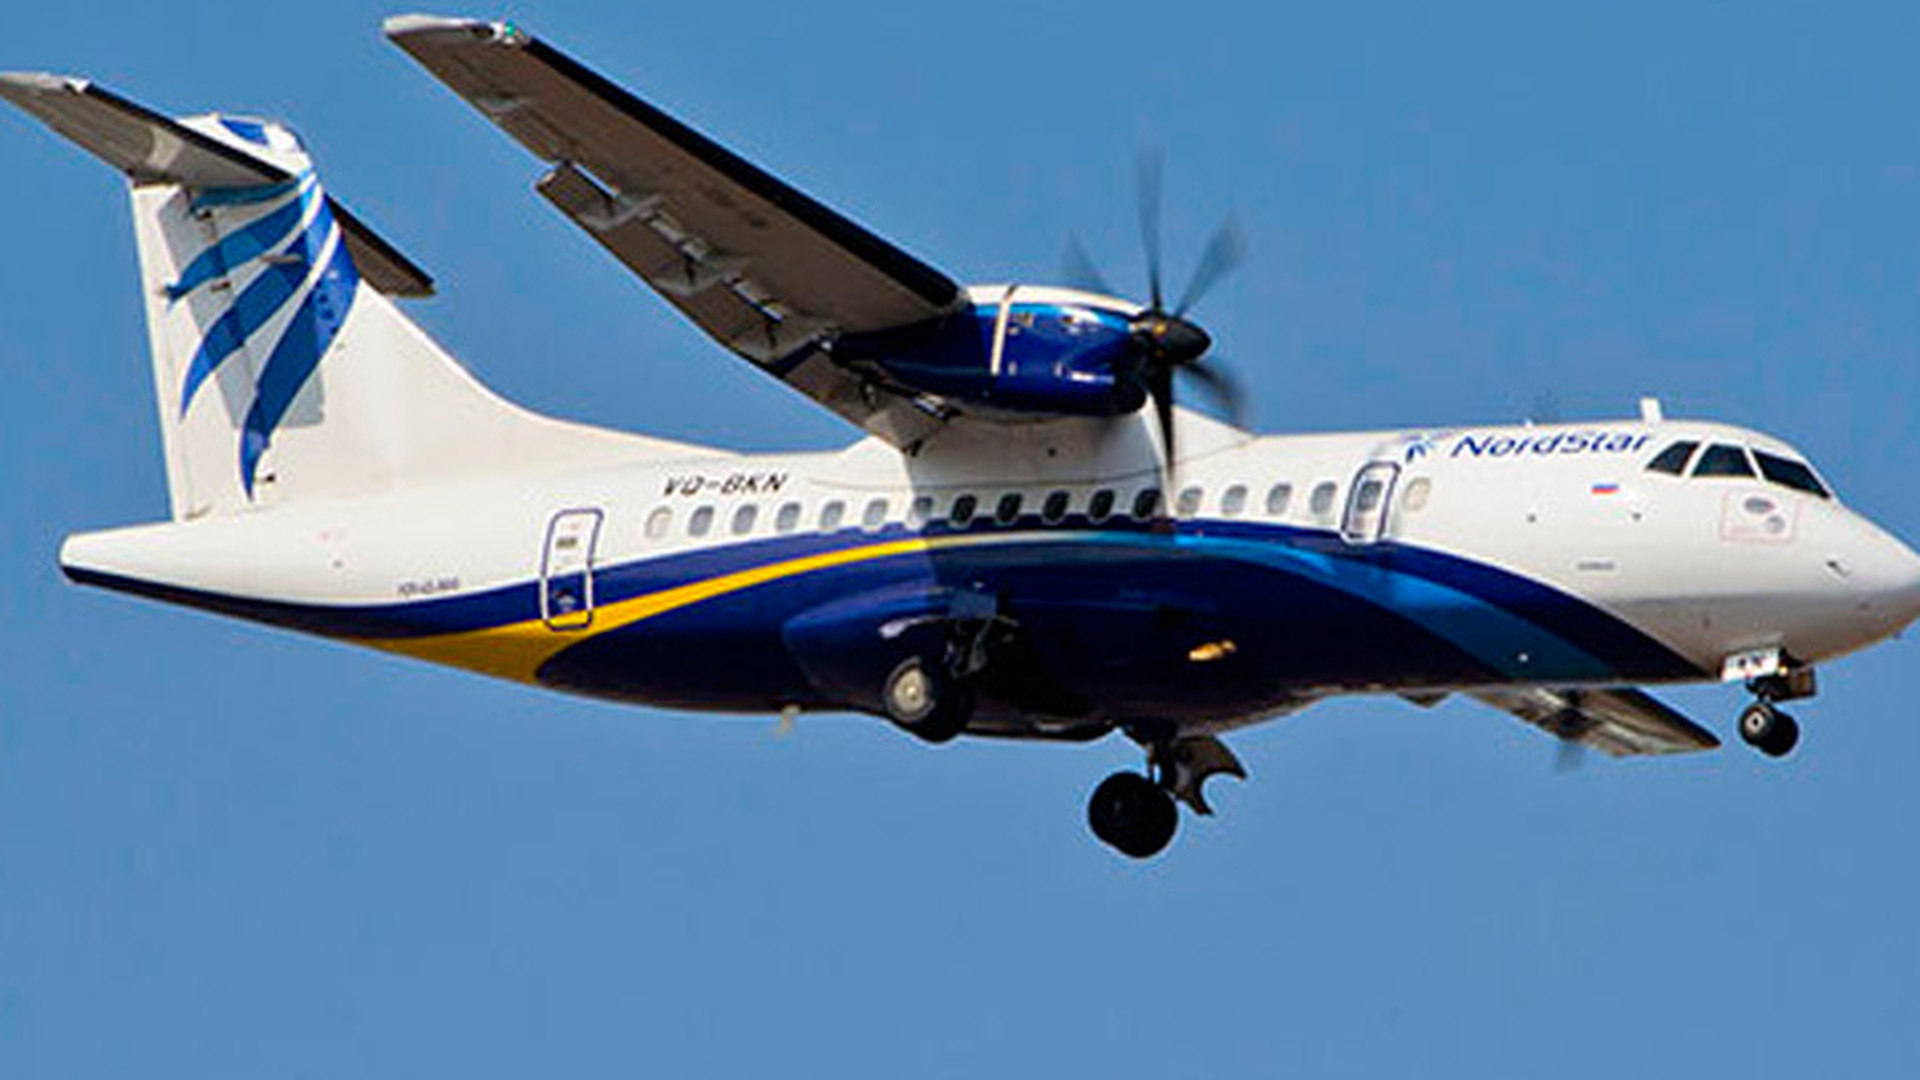 Nordstar купить авиабилет. Самолет Нордстар ATR. ATR 42 NORDSTAR livery. Авиакомпания Нордстар самолеты. Ливрея АТР 42 NORDSTAR.